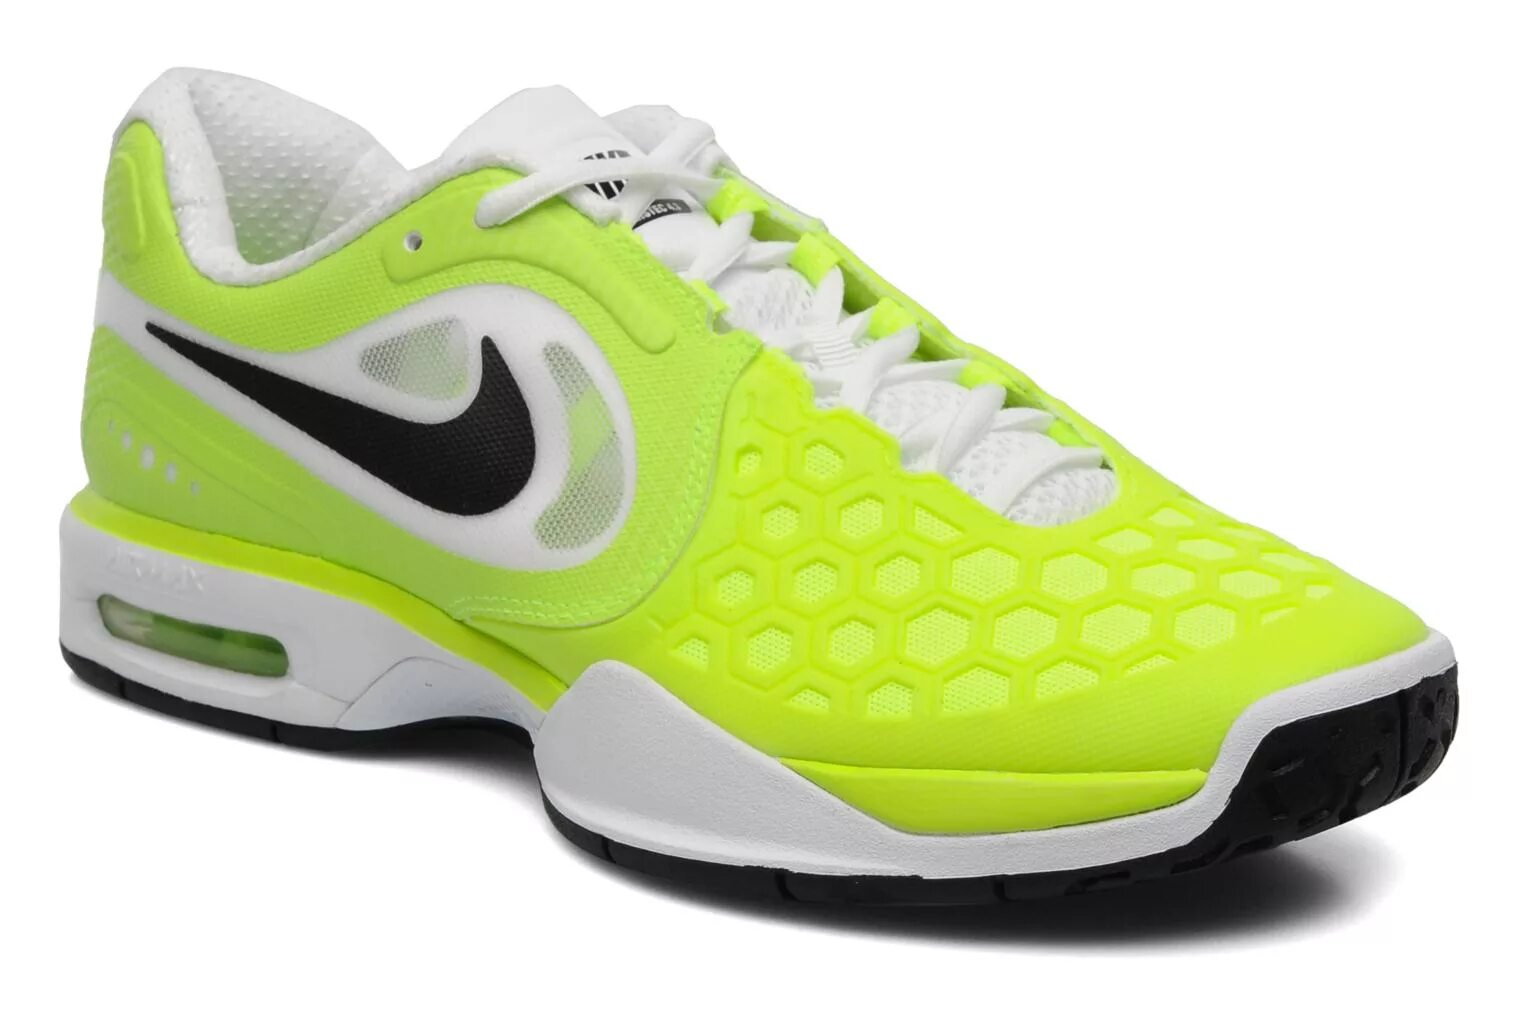 Теннисные кроссовки найк. Теннисные кроссовки Nike женские. Теннисные кроссовки найк Air Max мужские. Кроссовки для большого тенниса 2021 Retro. Купить найк дешево